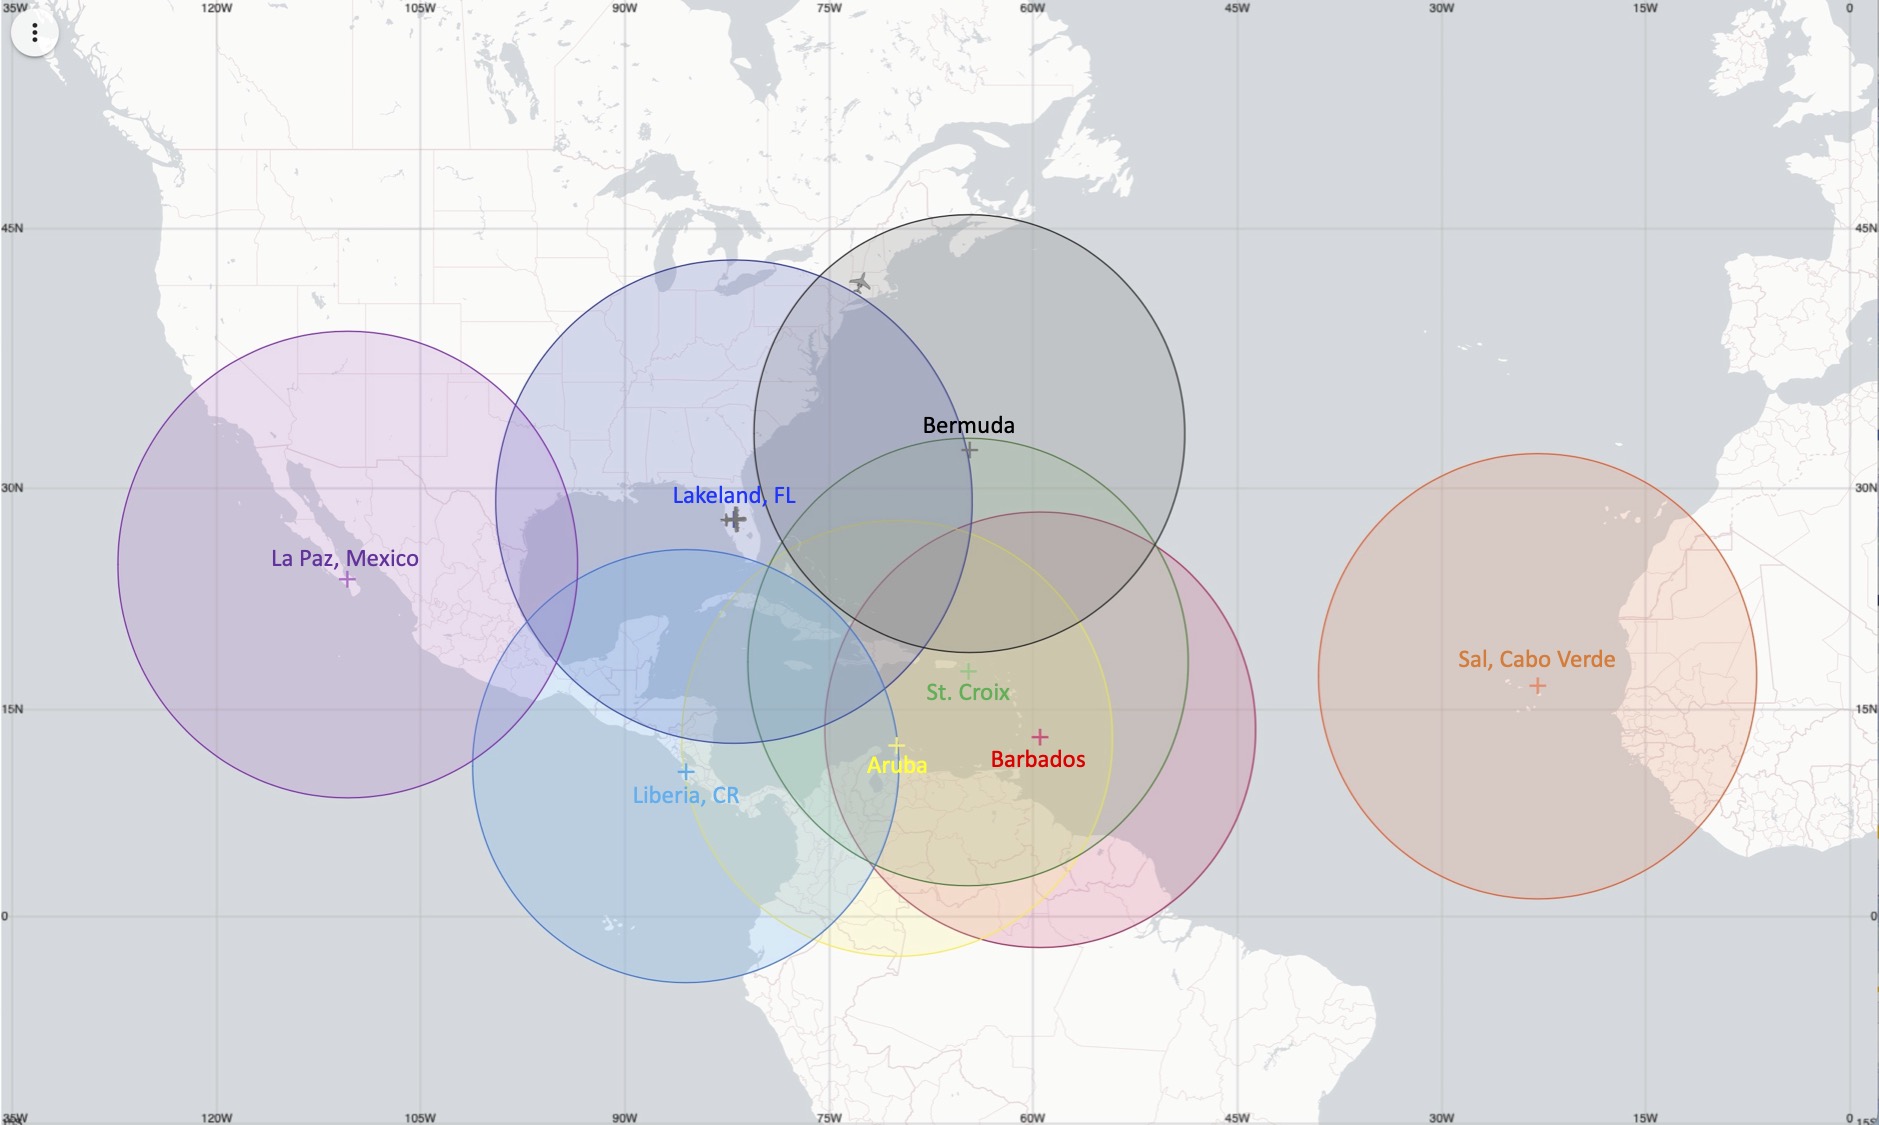 2023 Huracán Archivó el Mapa Operacional de Vuelo del Avión P-3 Representa 8 círculos que indican el alcance del avión, centrado en La Paz, México; Lakeland, FL; Bermuda; Liberia Costa Rica; Aruba; St Croix; Barbados &amp; Sal, Cabo Verde. Los círculos son algo más pequeños que los del GIV.